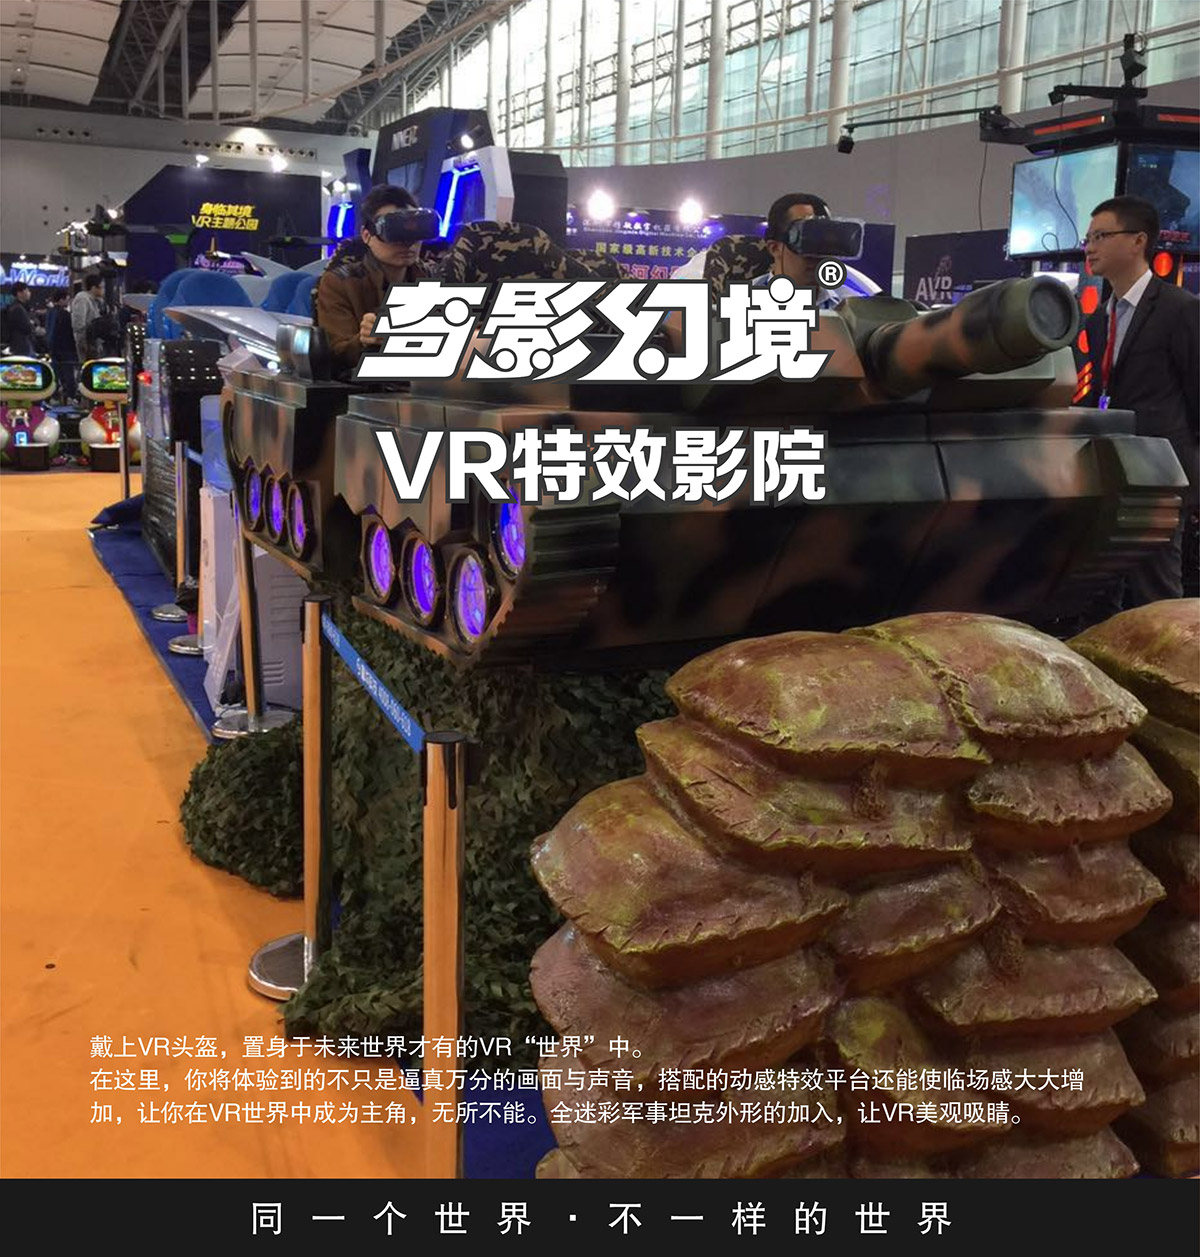 模拟体验首款VR特效影院坦克对战.jpg